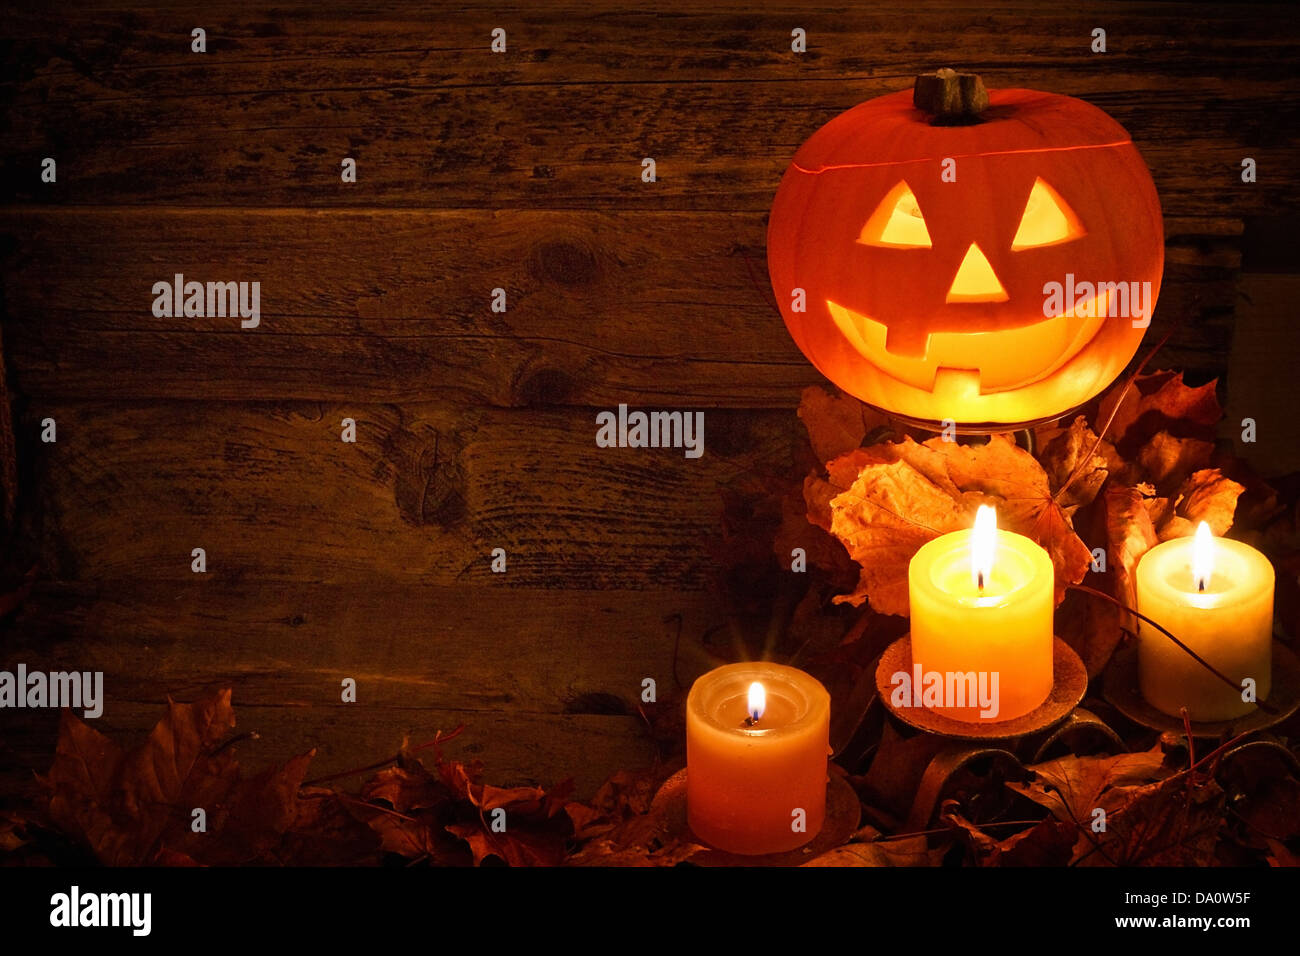 Halloween calabazas talladas de fondo durante el otoño para celebrar un festival pagano una adaptación moderna de la fiesta de los muertos Foto de stock